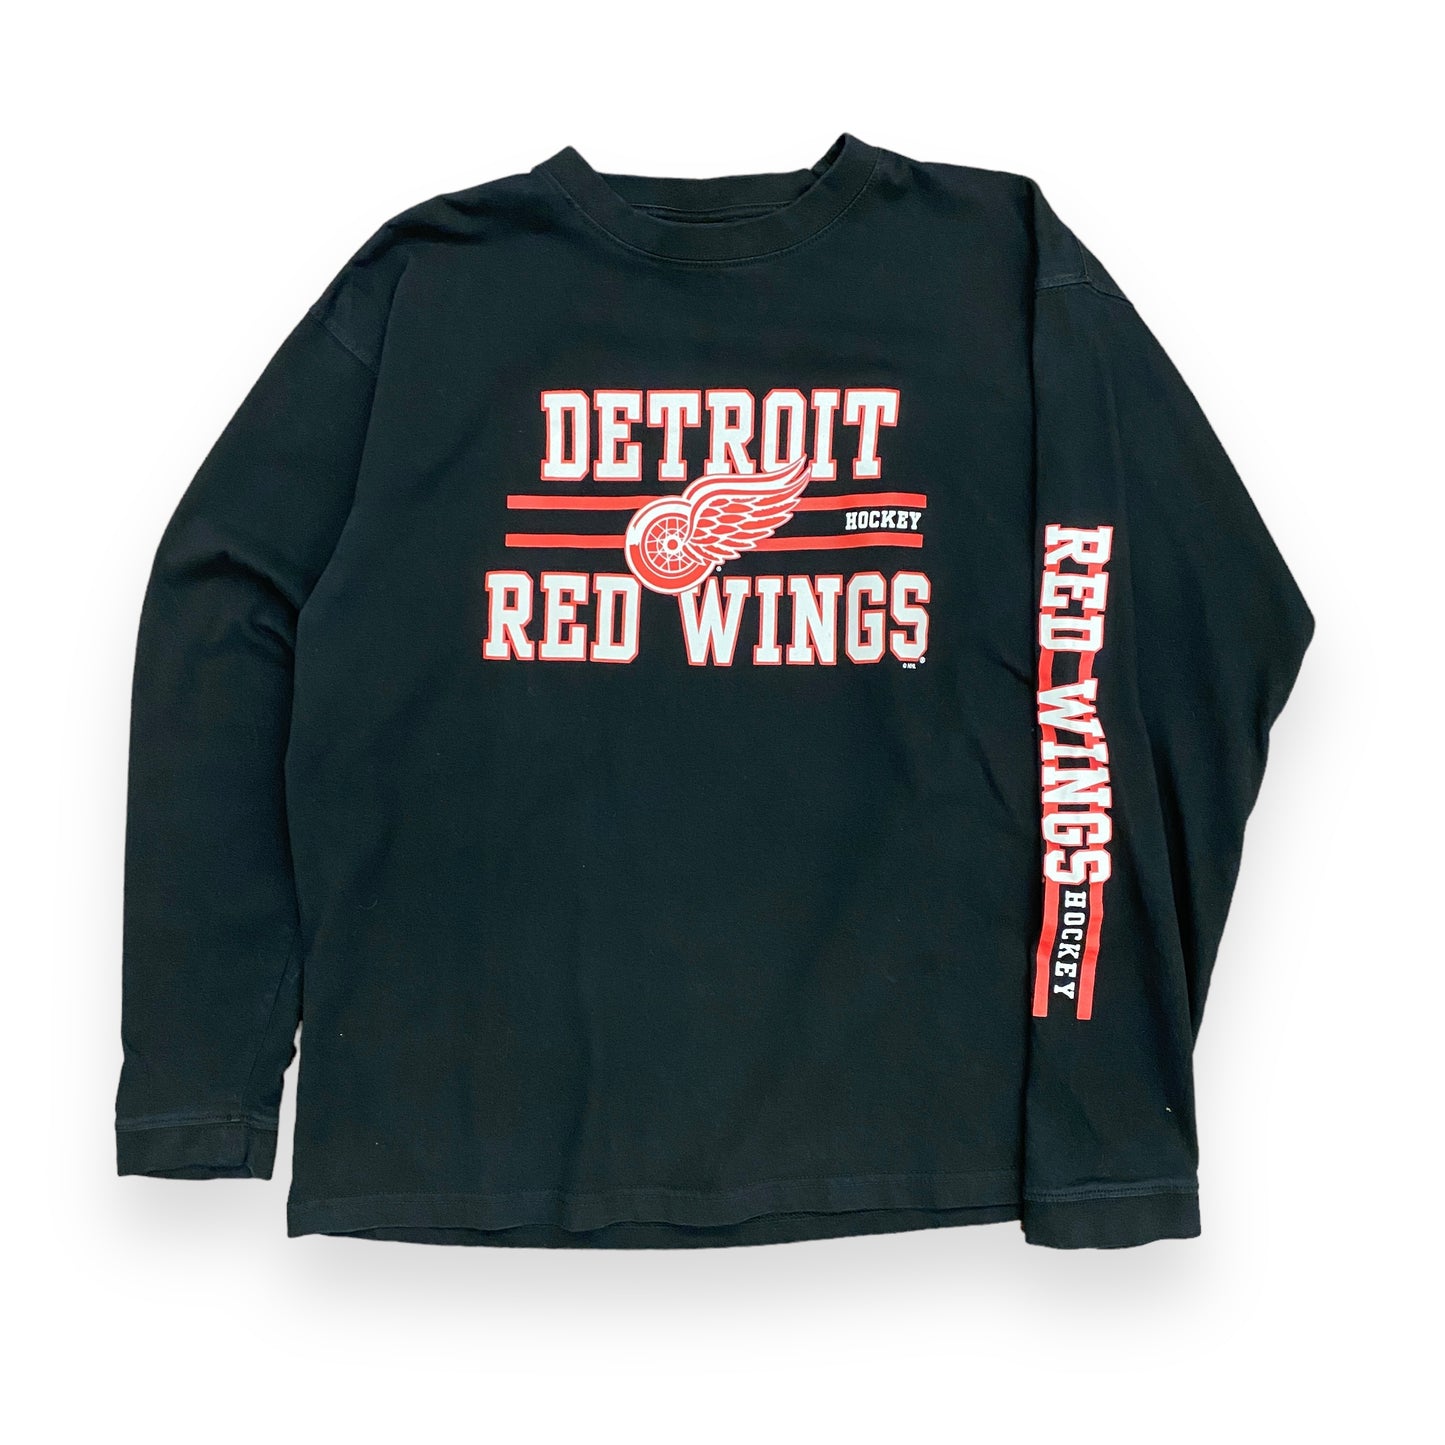 Y2K Detroit Red Wings NHL Hockey Long Sleeve Tee - Size Large